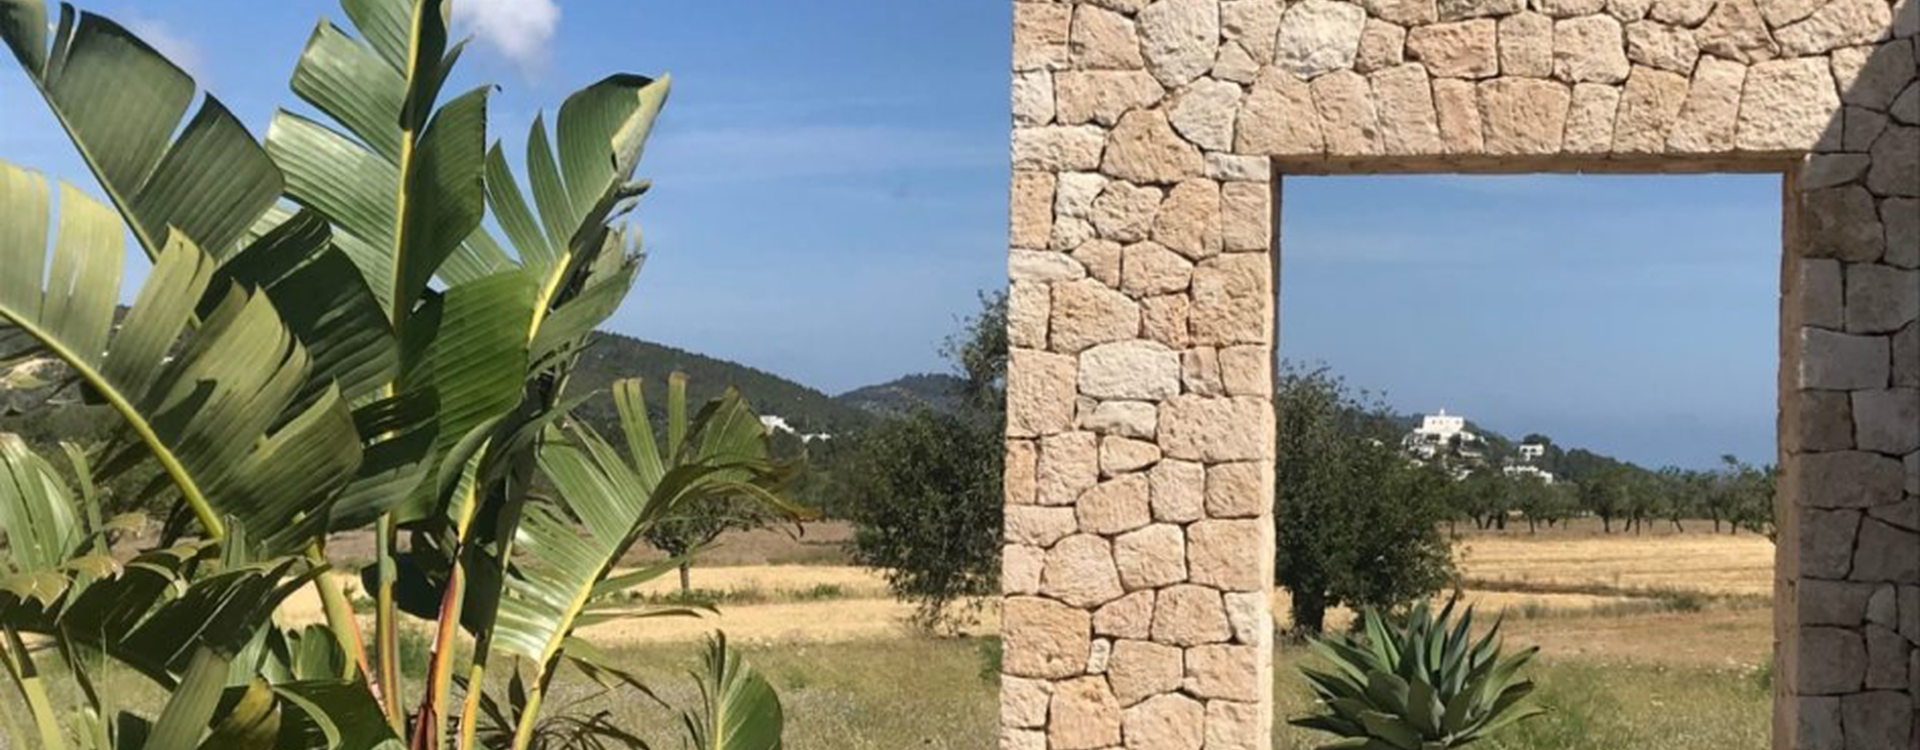 Villa Finca Gertrudis te huur op Ibiza - Zicht